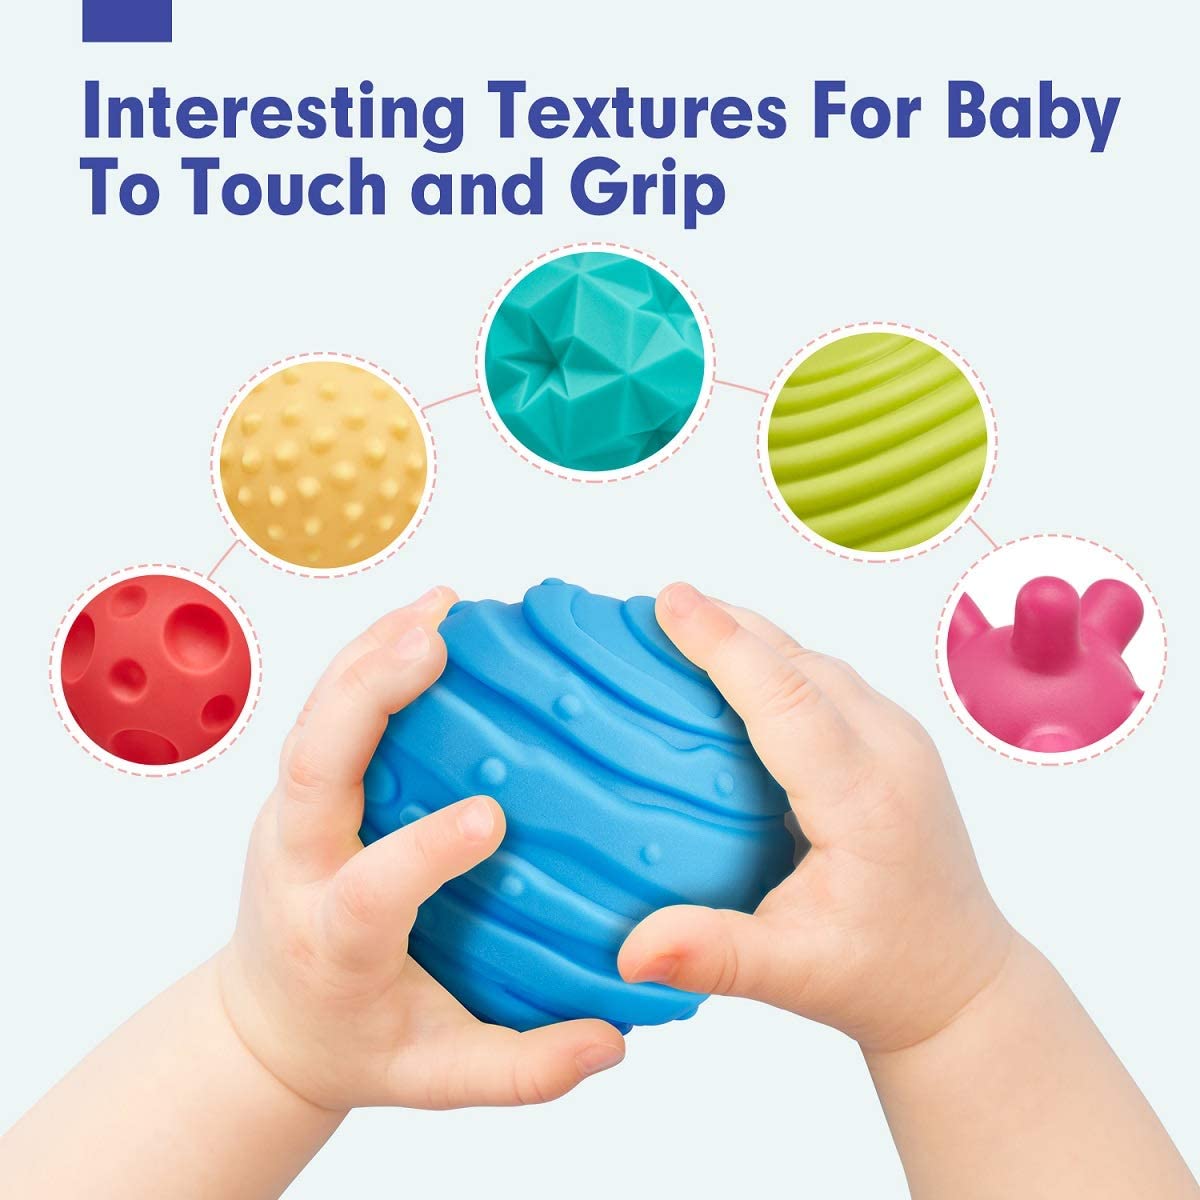 Juguetes para bebes 3-6 meses Bolas sensoriales Multicolor d hahaland  hahaland